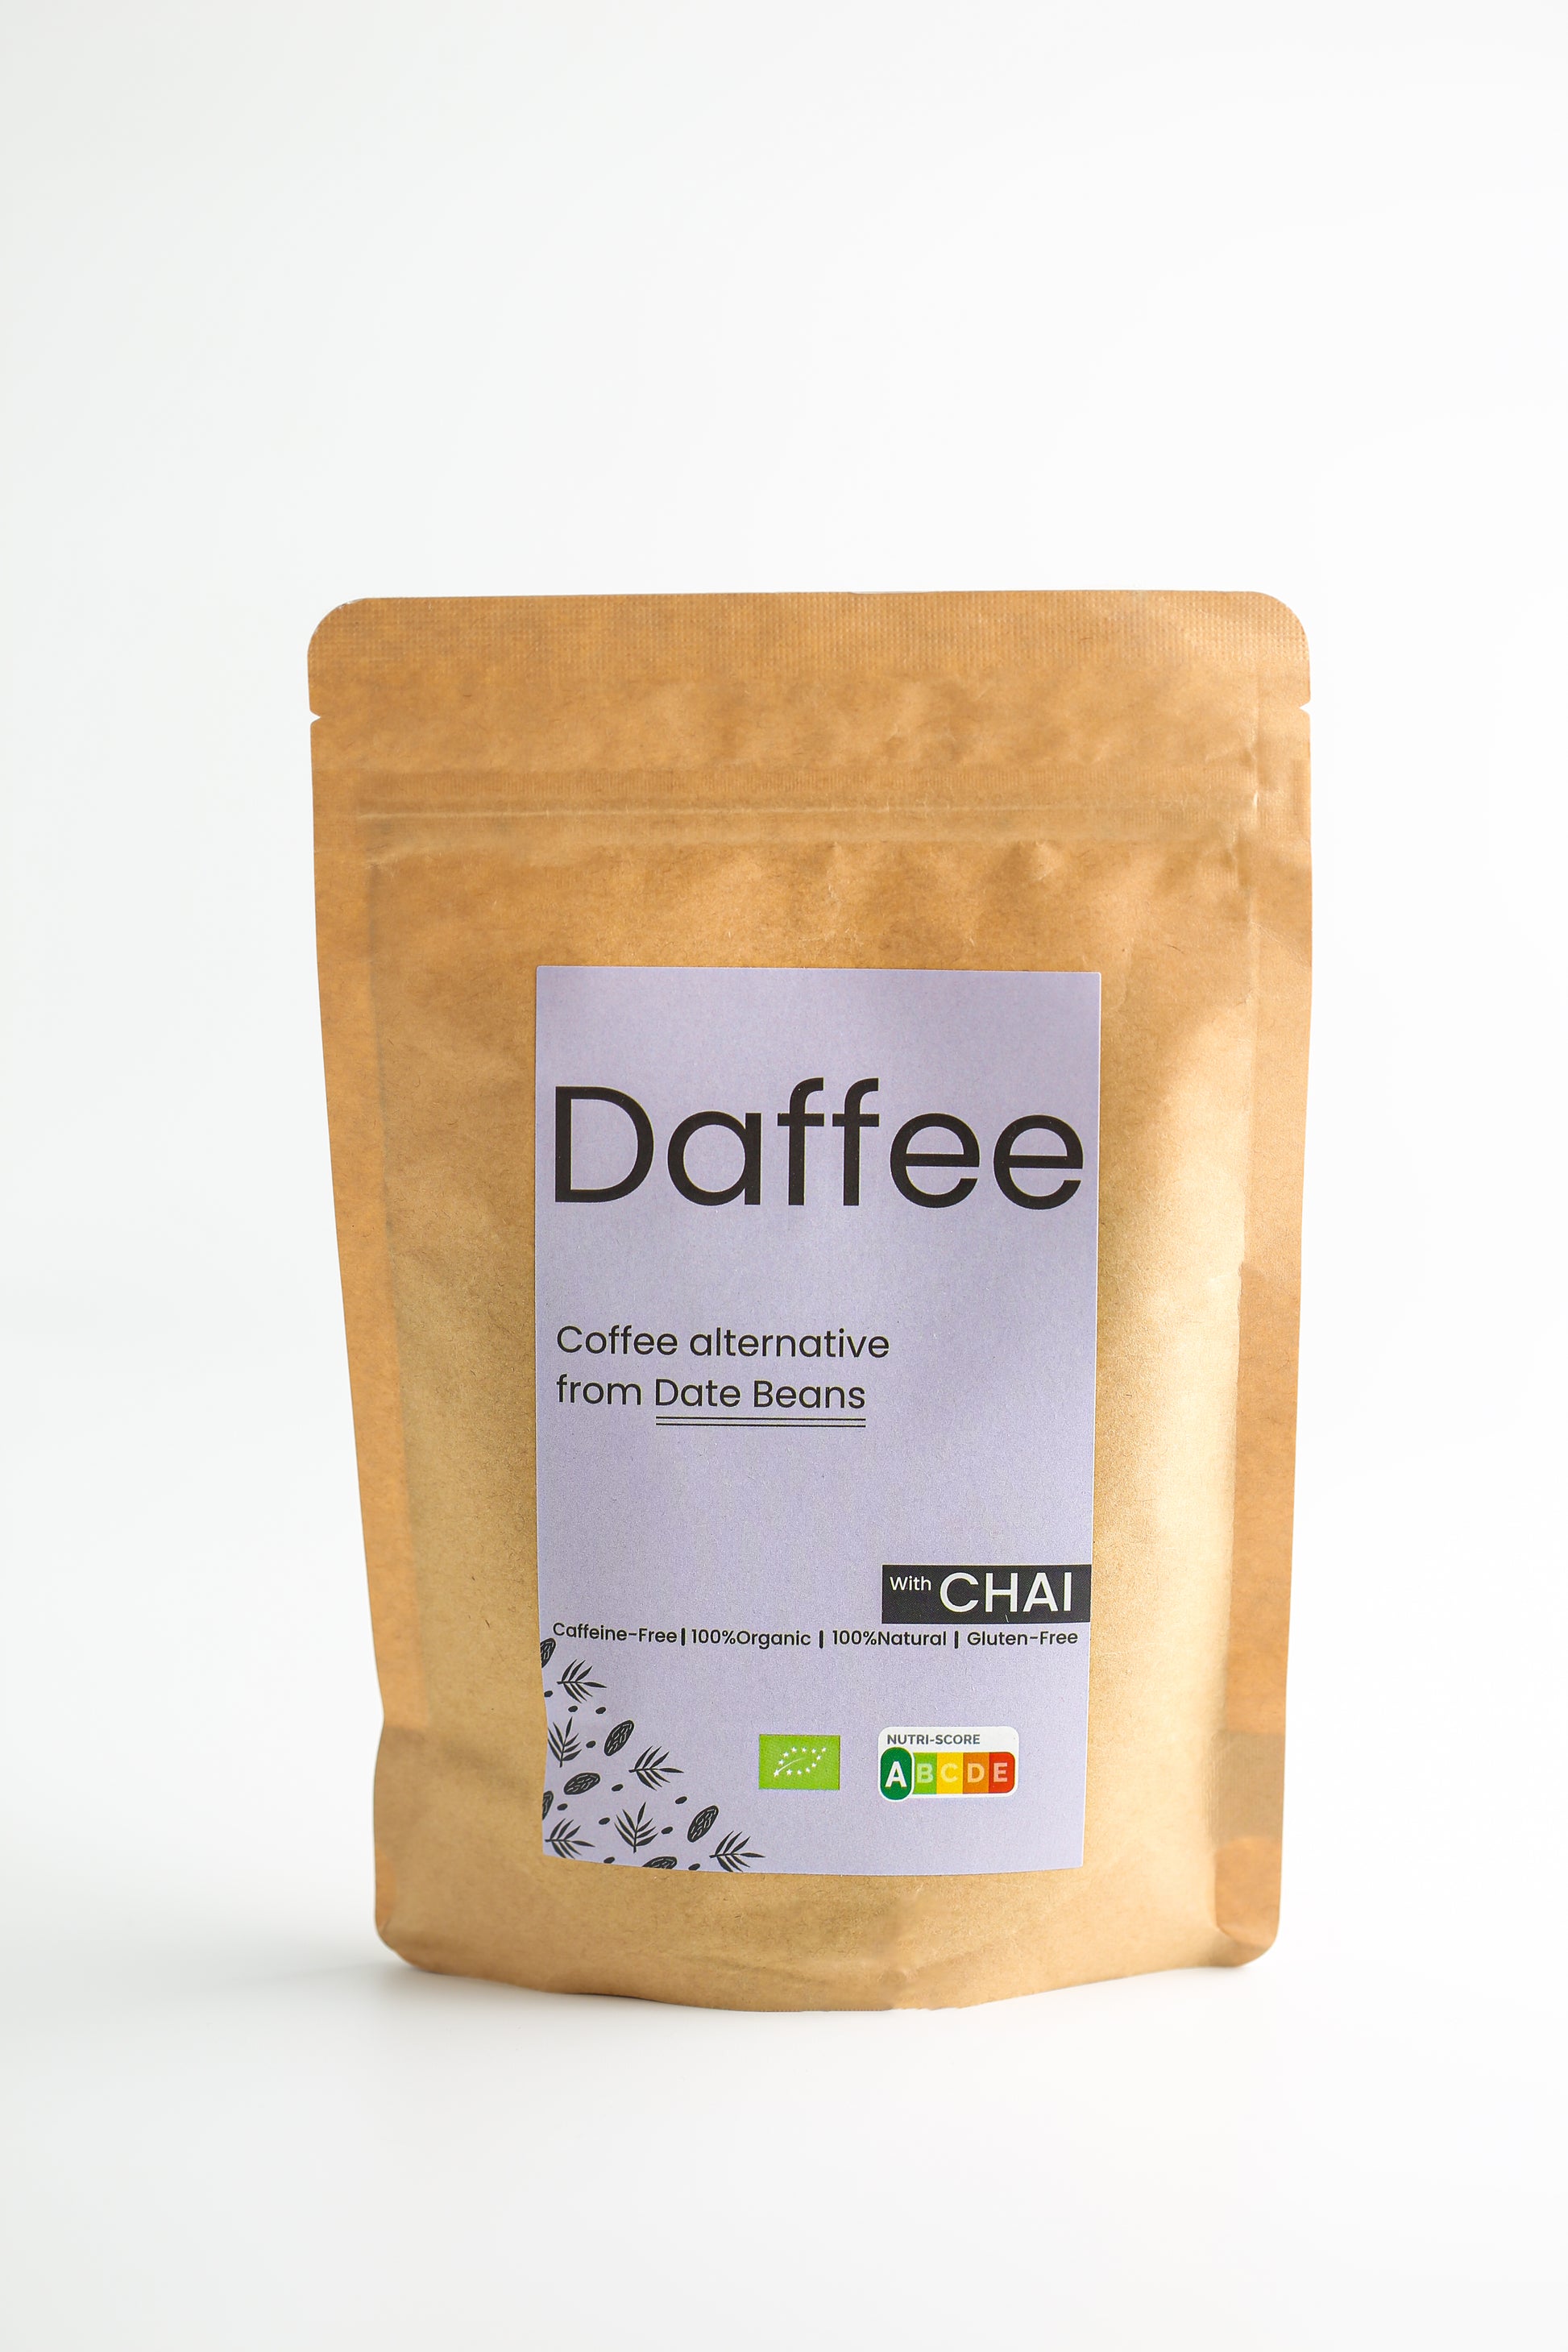 Daffee Chai koffiealternatief van dadelbonen in duurzame verpakking tegen een witte achtergrond.